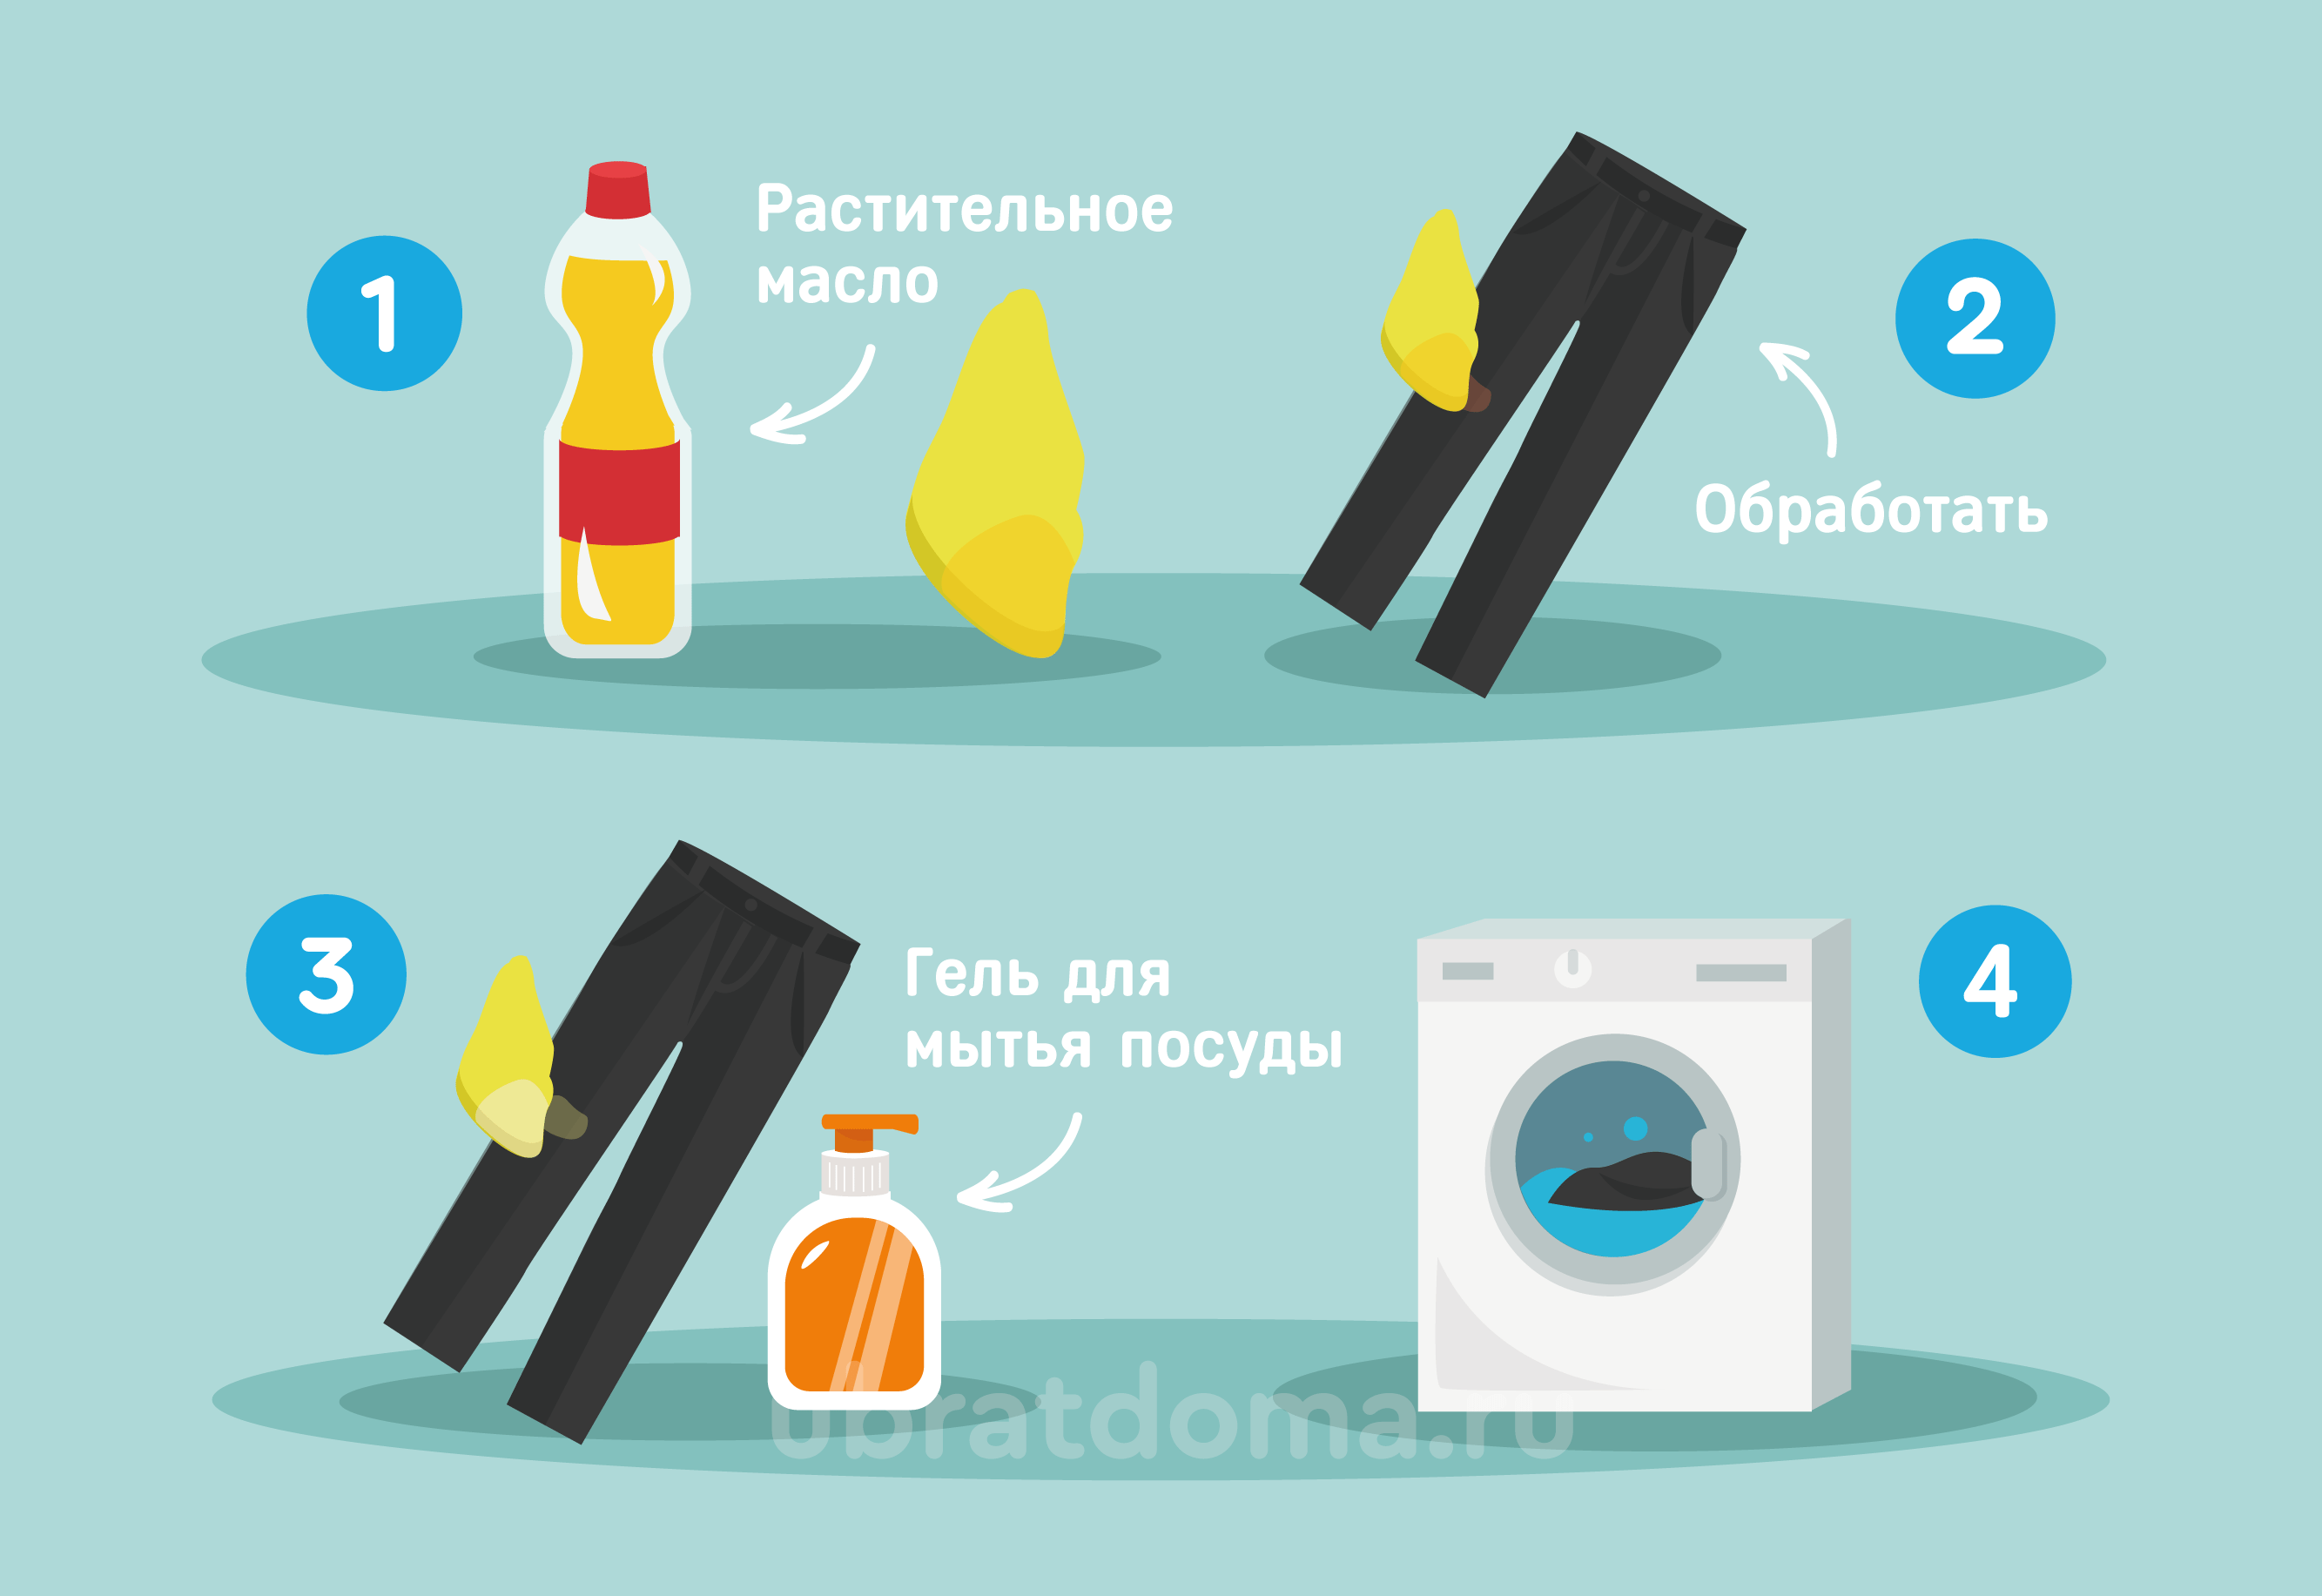 Как вывести с одежды пятно от масла - wikihow